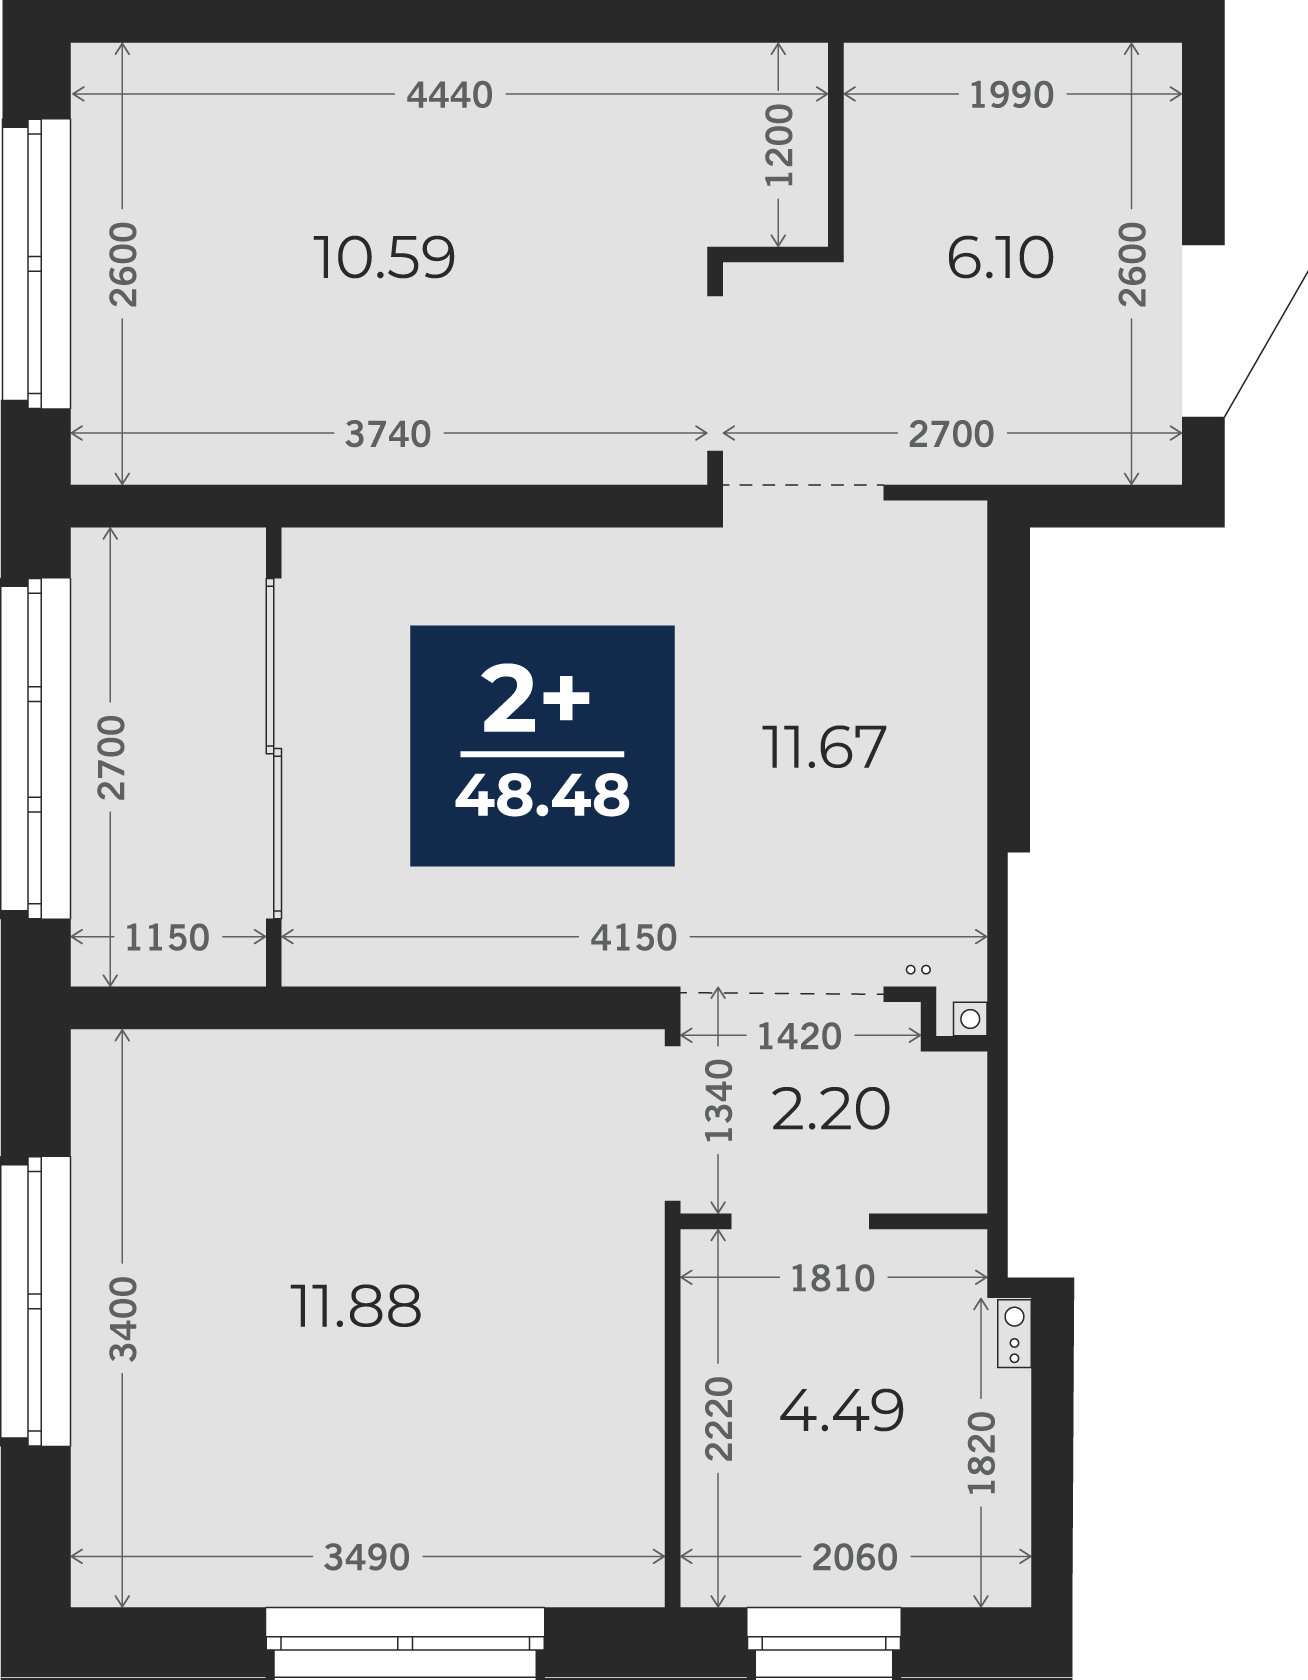 Квартира № 116, 2-комнатная, 48.48 кв. м, 13 этаж